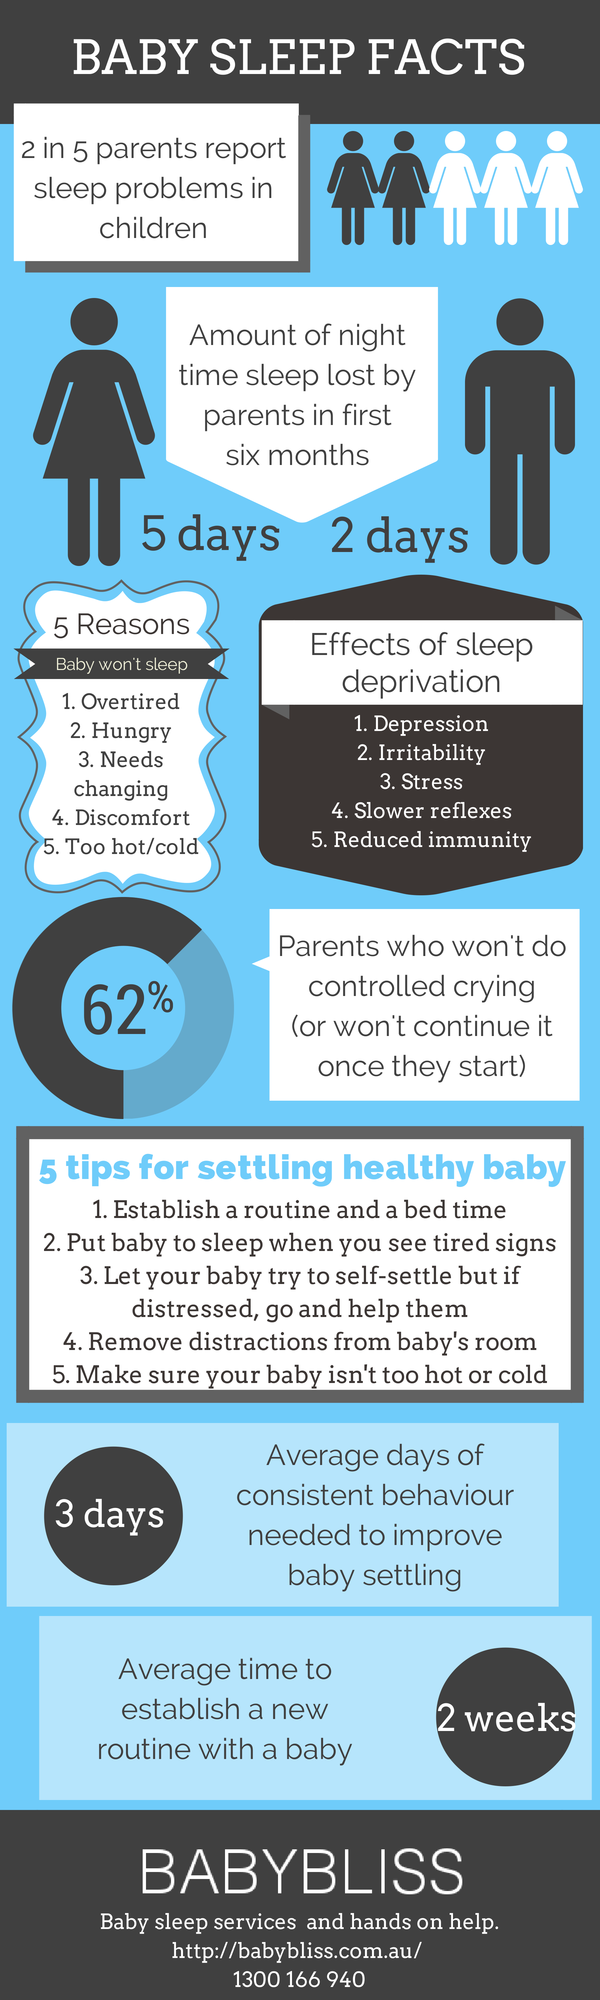 Baby sleep infographic